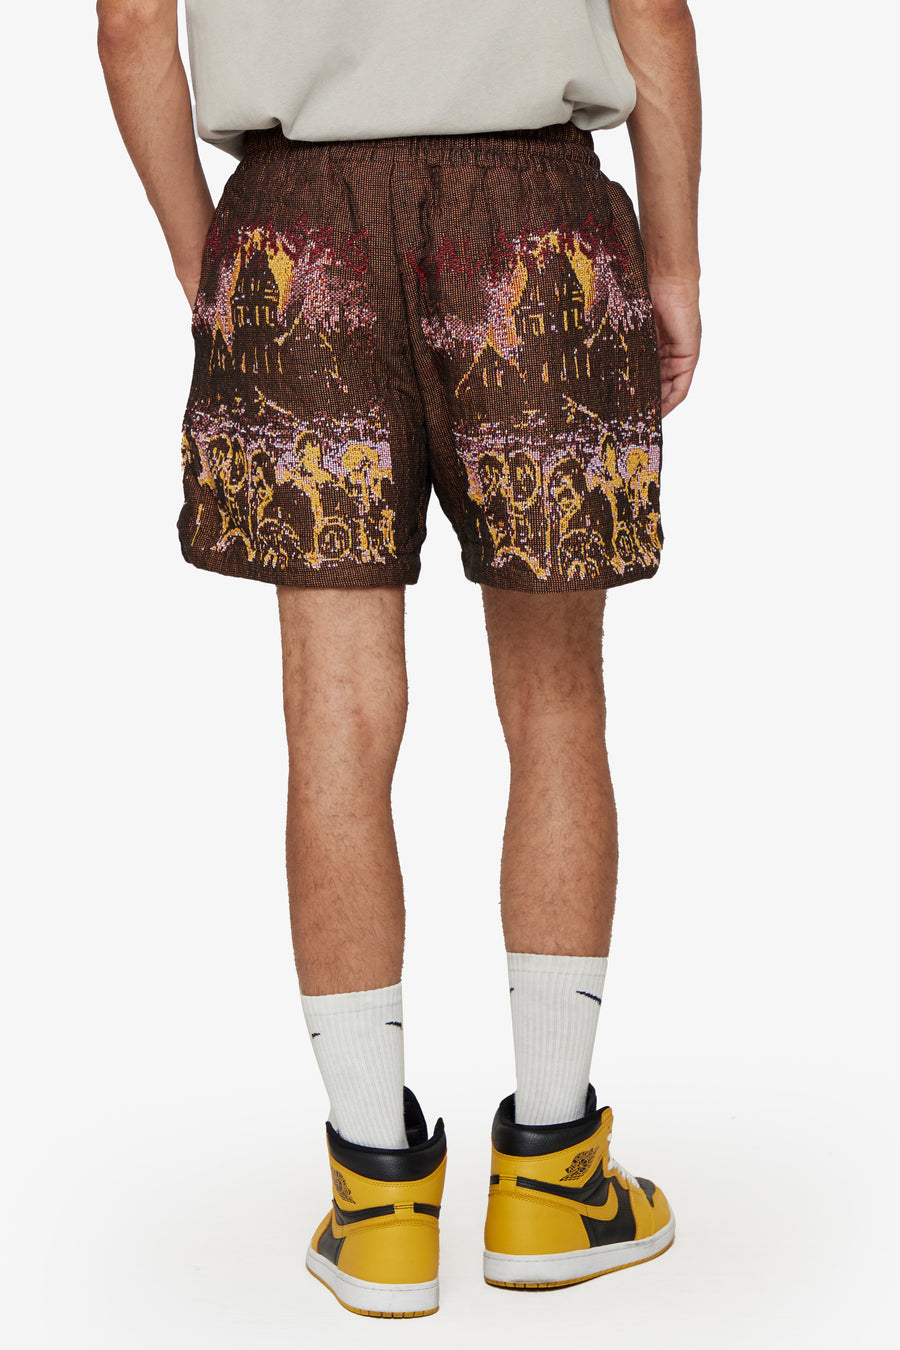 Louis Vuitton Monogram Camo Fleece Blouson Review#shorts 